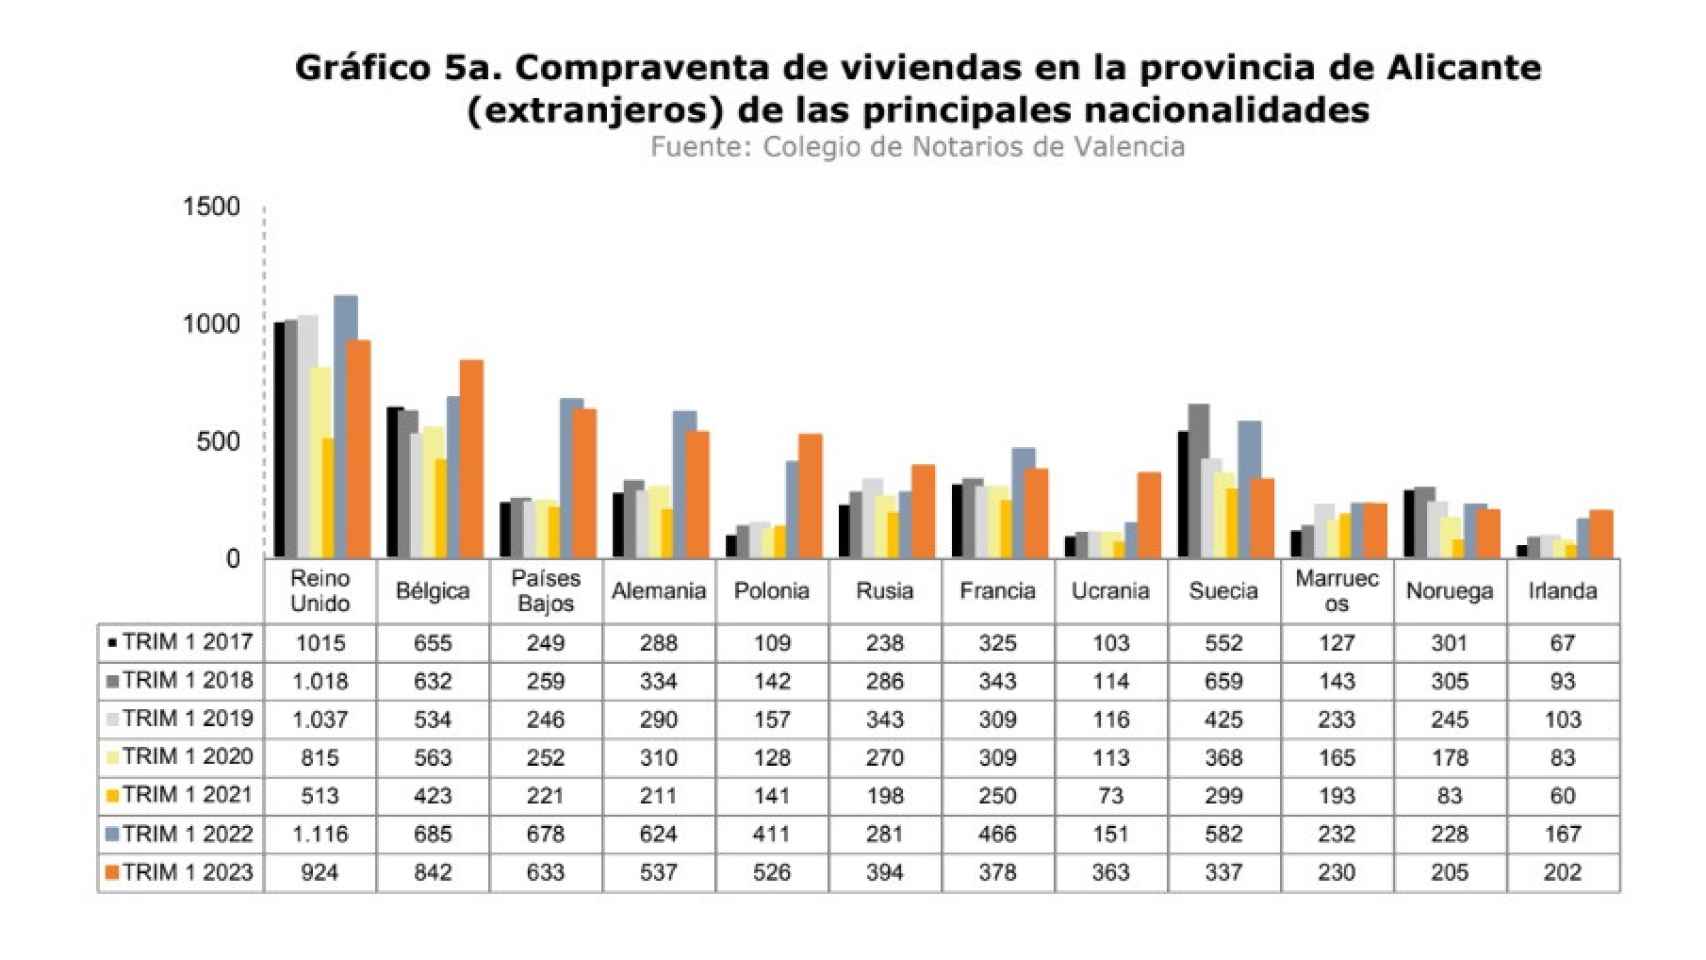 Compraventa de viviendas por extranjeros en la provincia de Alicante (1).